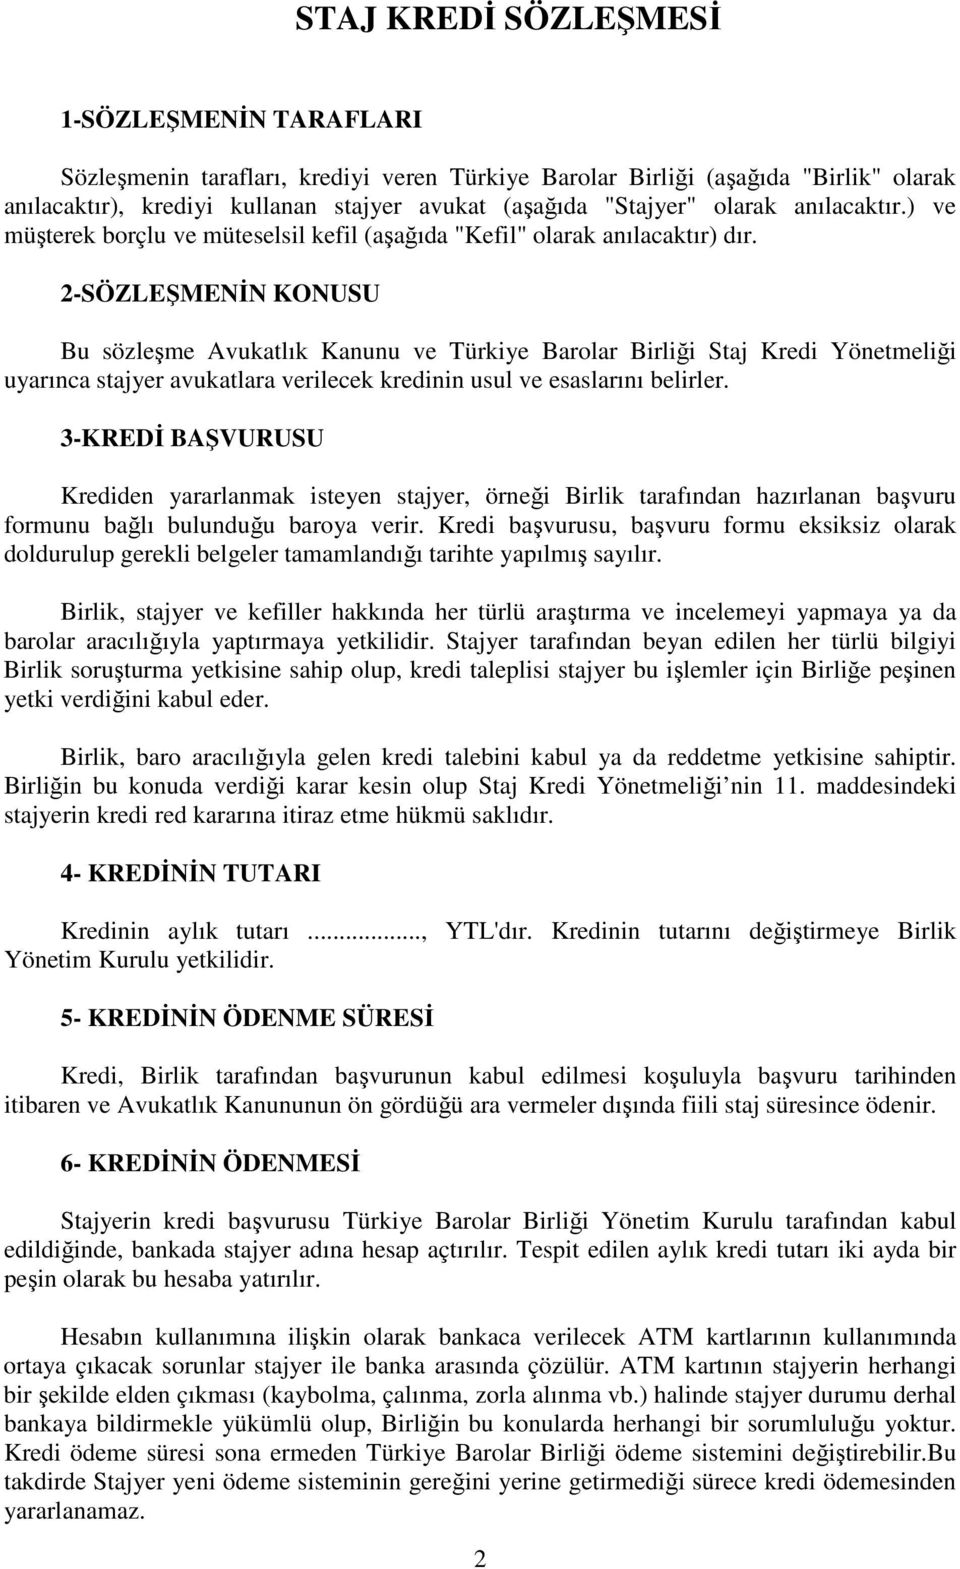 2-SÖZLEŞMENĐN KONUSU Bu sözleşme Avukatlık Kanunu ve Türkiye Barolar Birliği Staj Kredi Yönetmeliği uyarınca stajyer avukatlara verilecek kredinin usul ve esaslarını belirler.